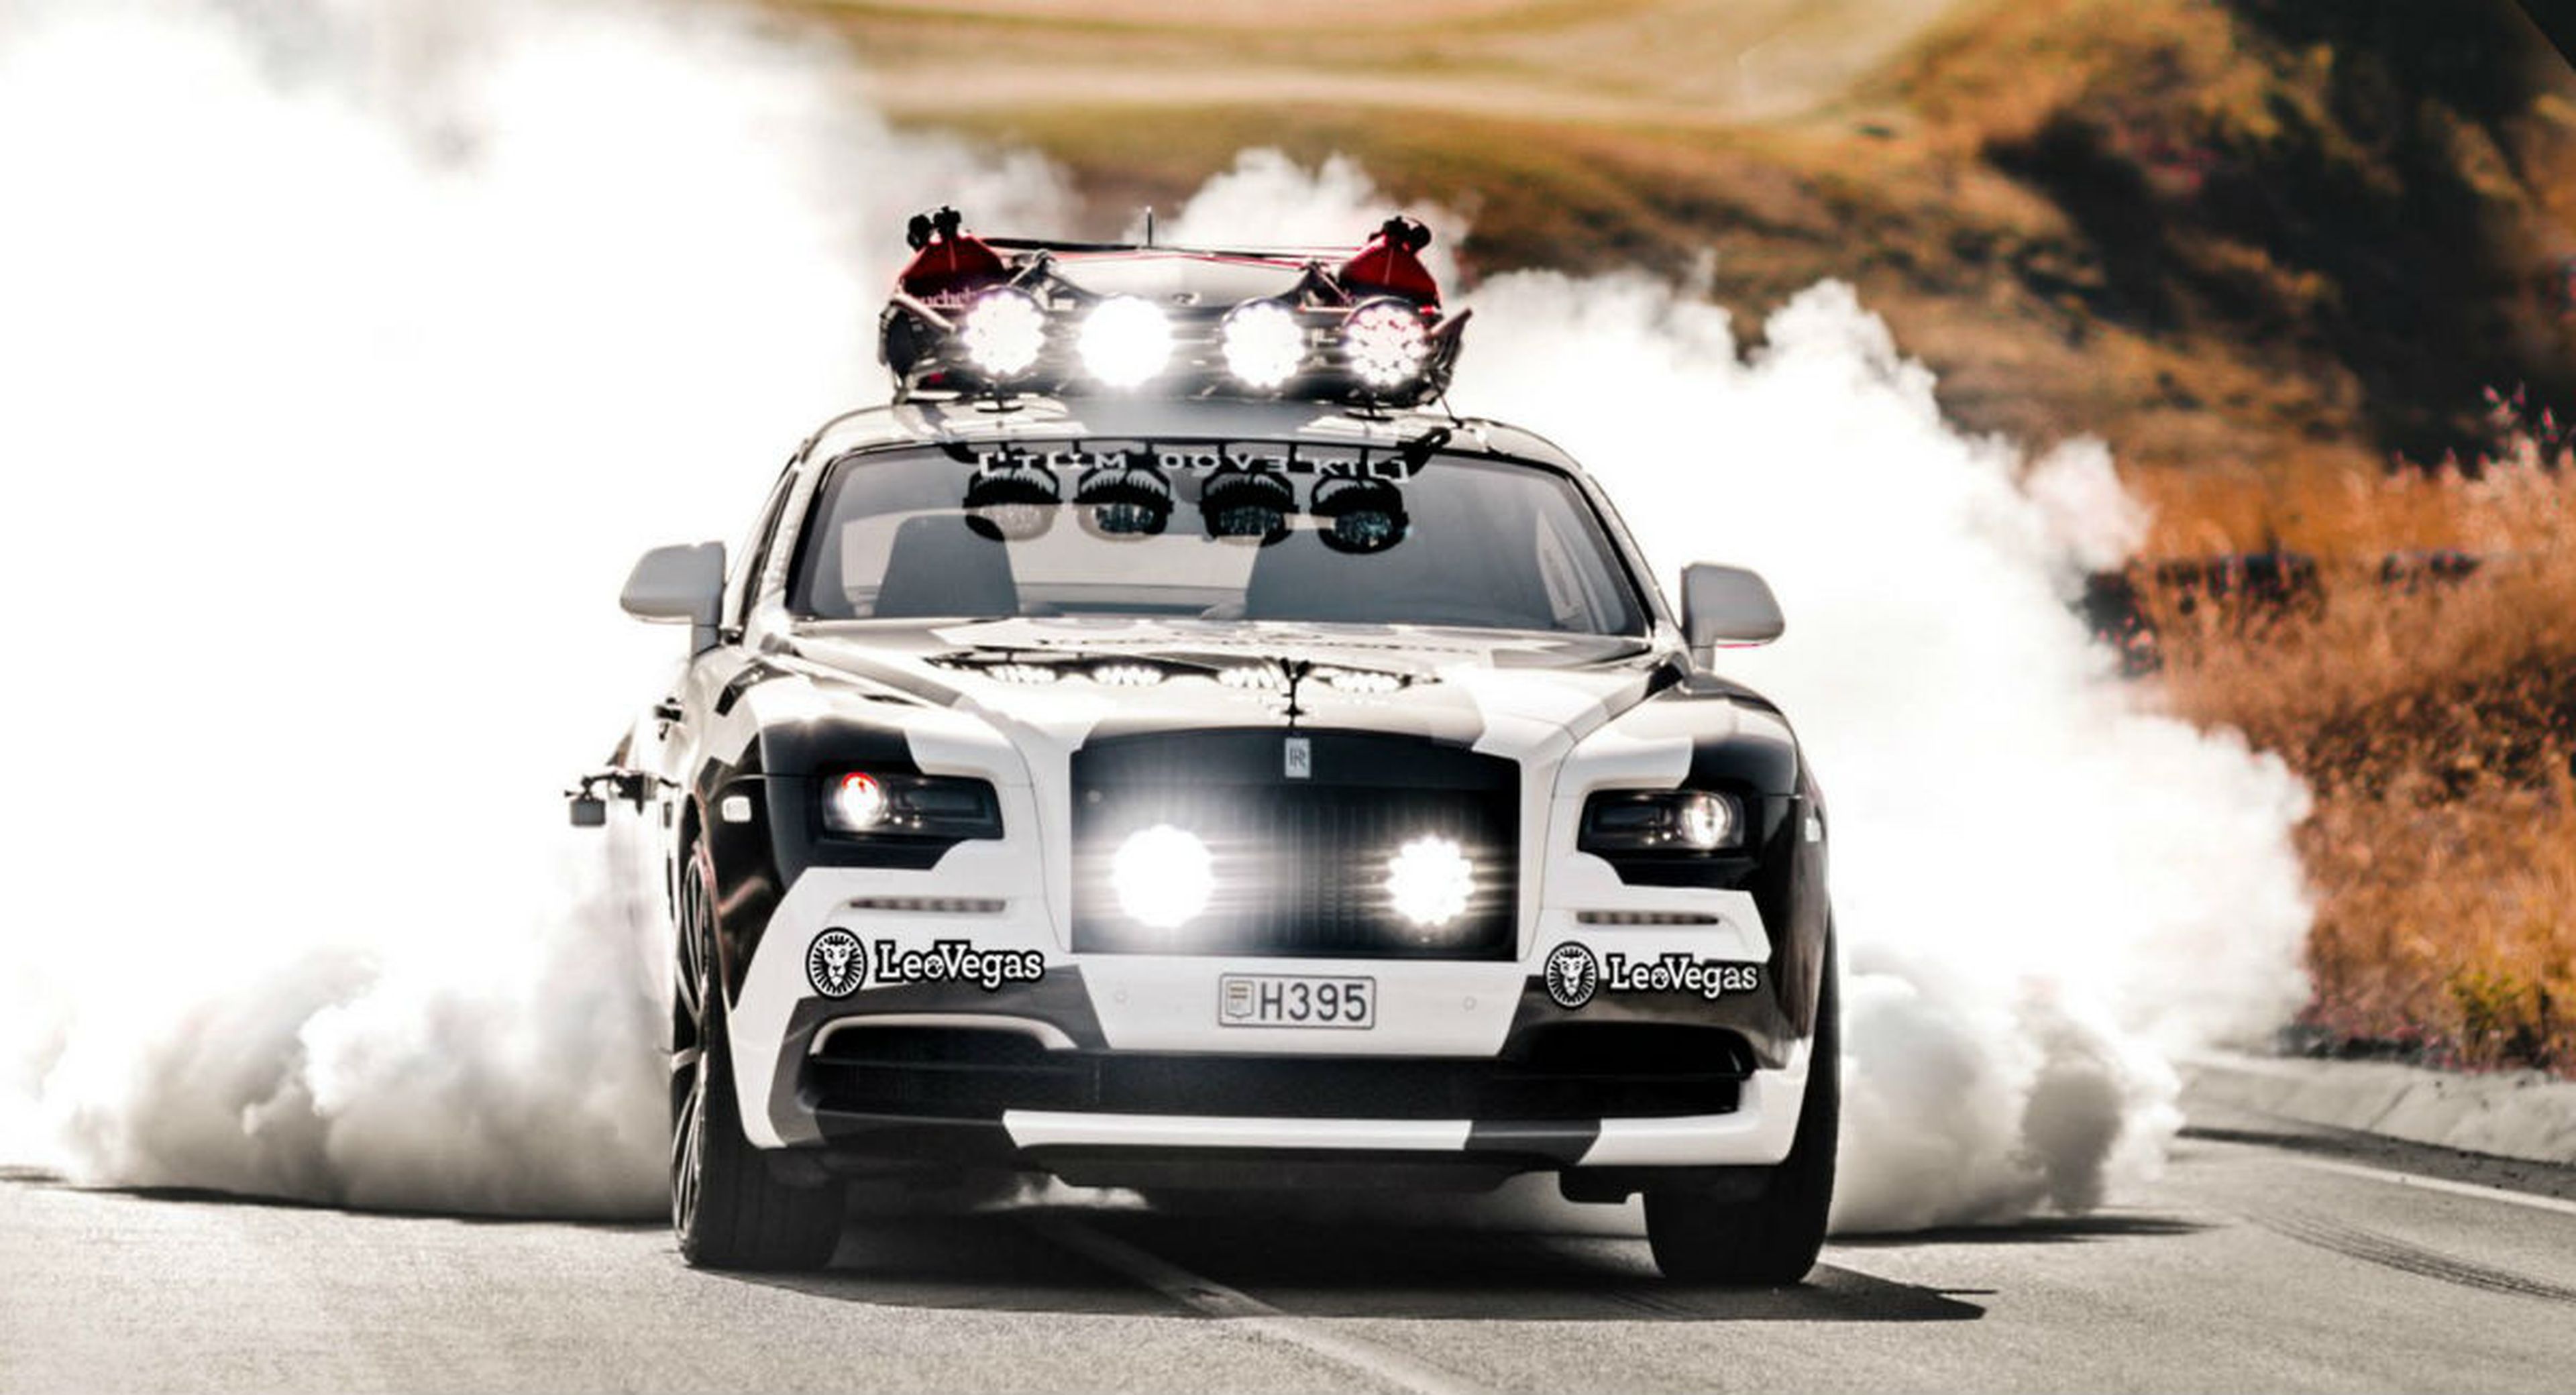 Rolls-Royce Wraith Jon Olsson